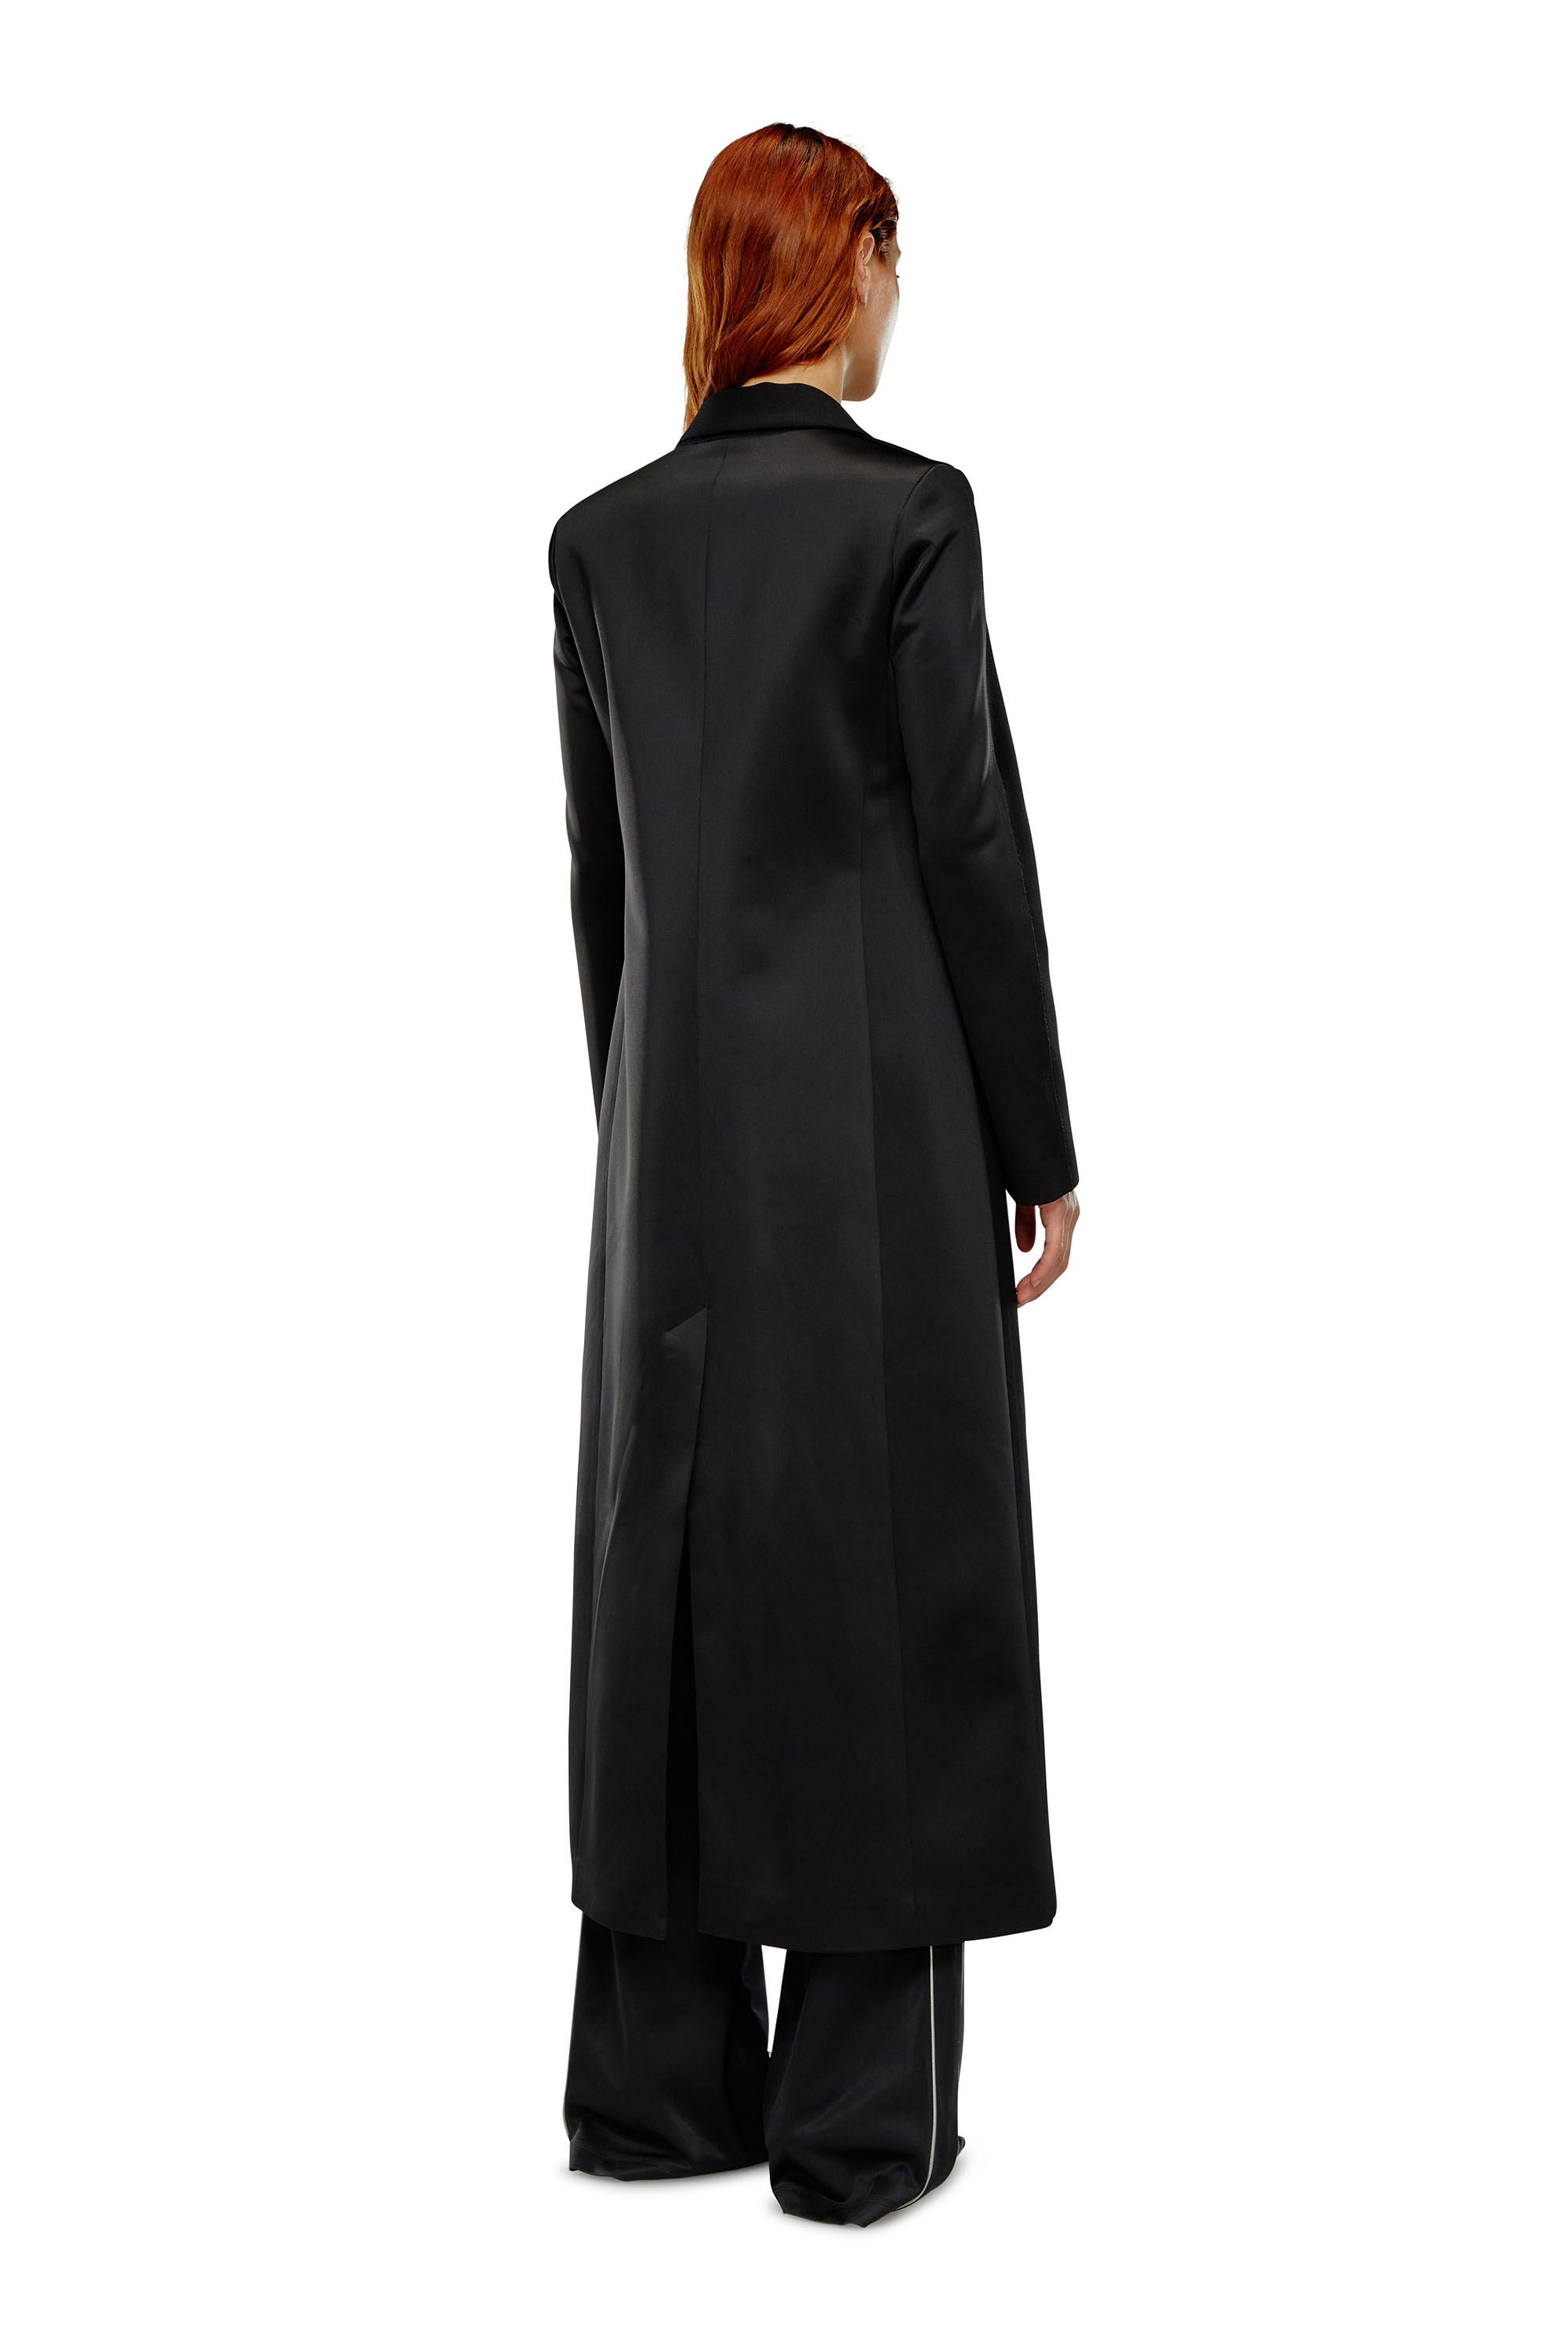 Diesel - Langer Mantel aus Cool Wool und Tech-Material - Jacken - Damen - Schwarz